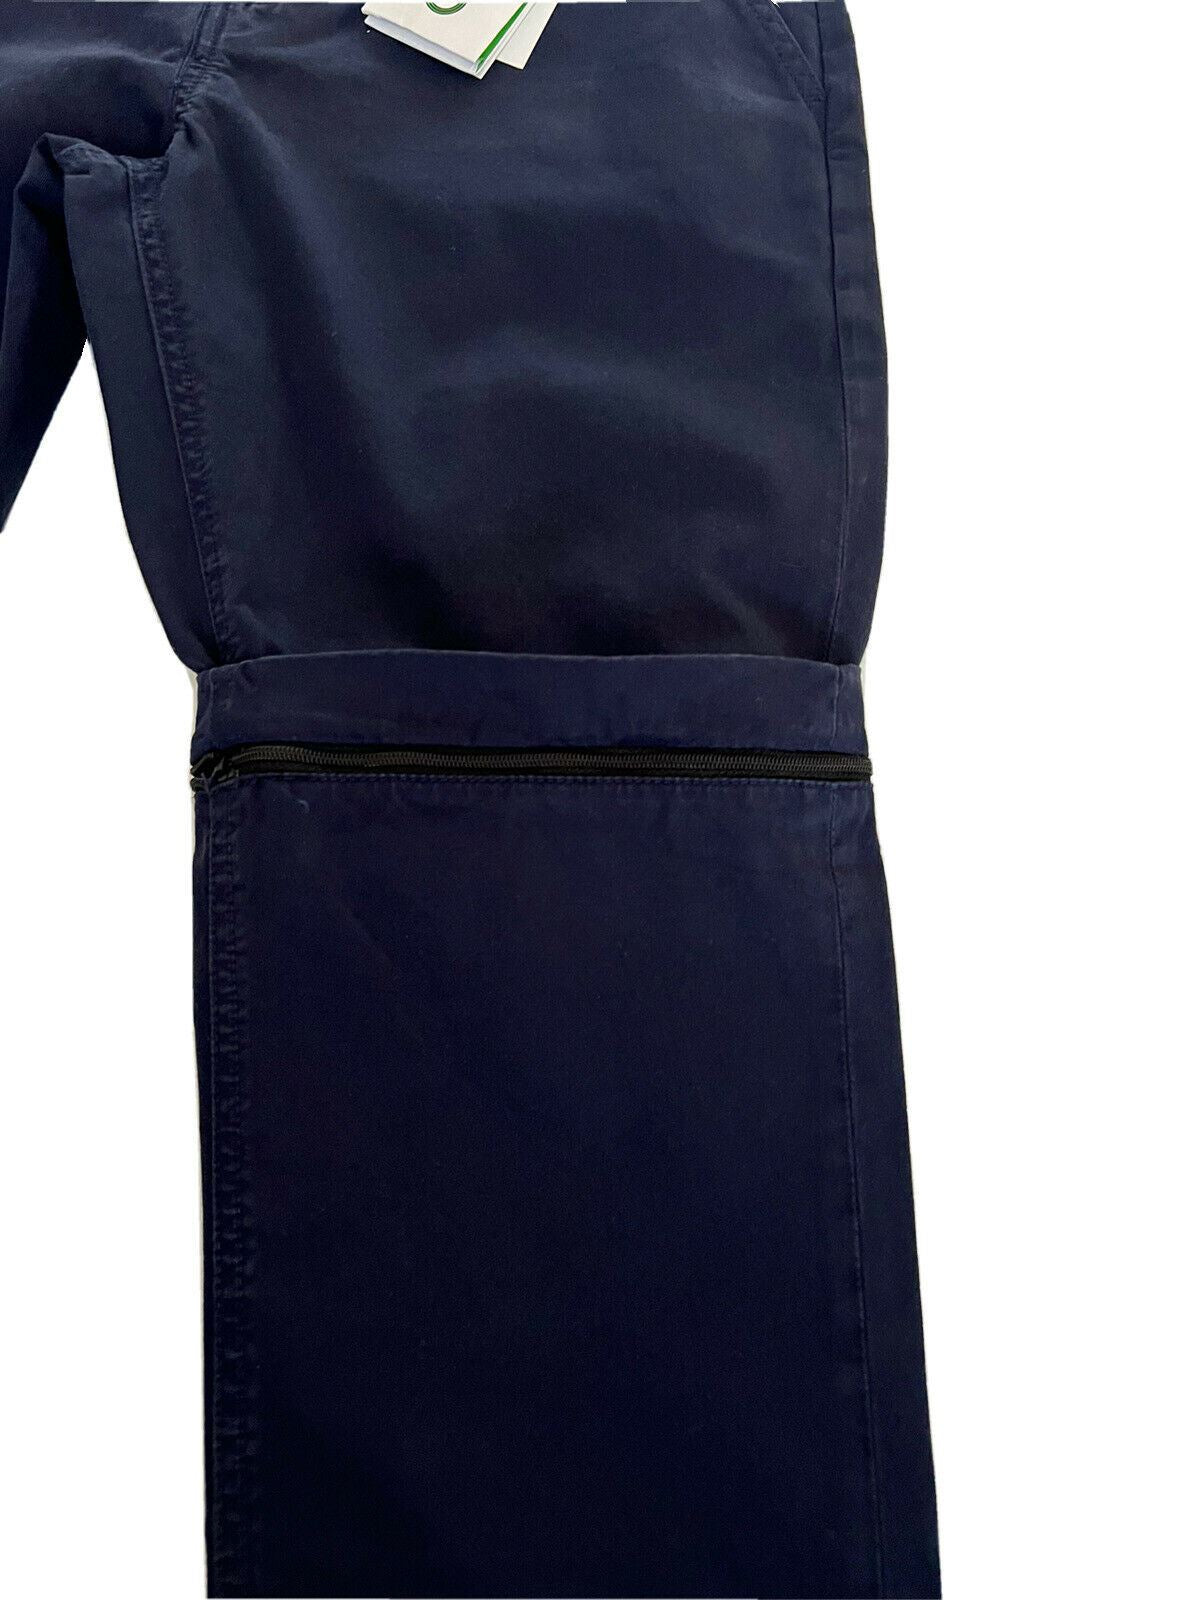 Мужские повседневные брюки Kenzo Midnight Blue на молнии за 280 долларов США, размер 28, США (44 евро)